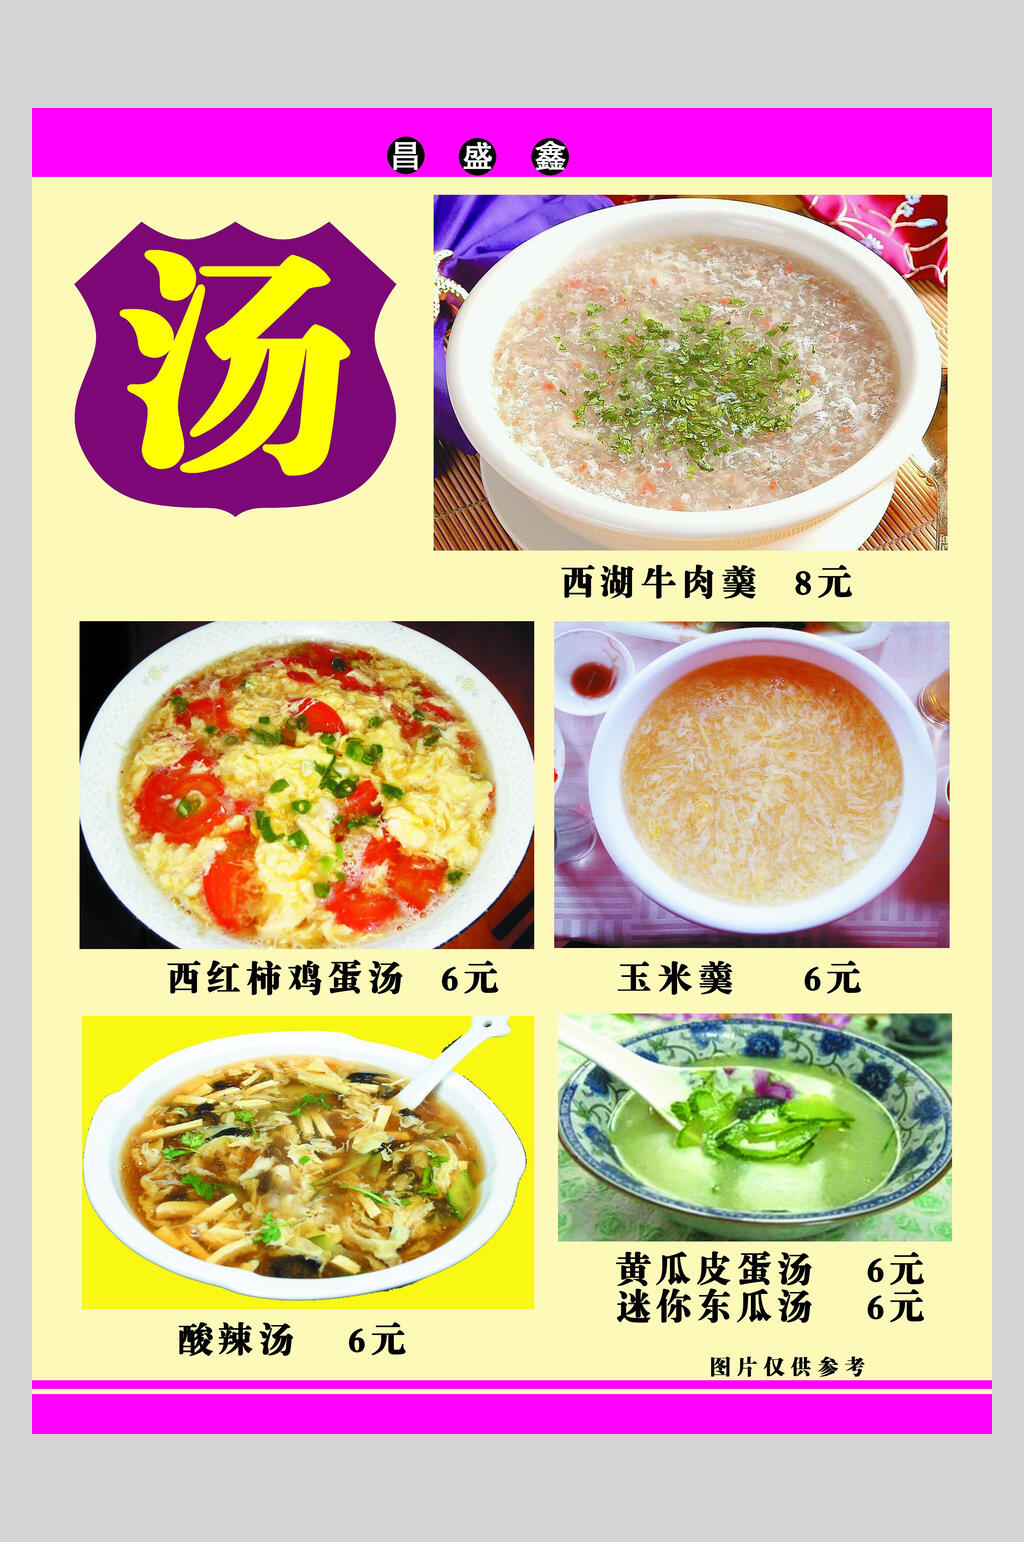 简约汤菜黄紫色高级感大气菜单海报素材